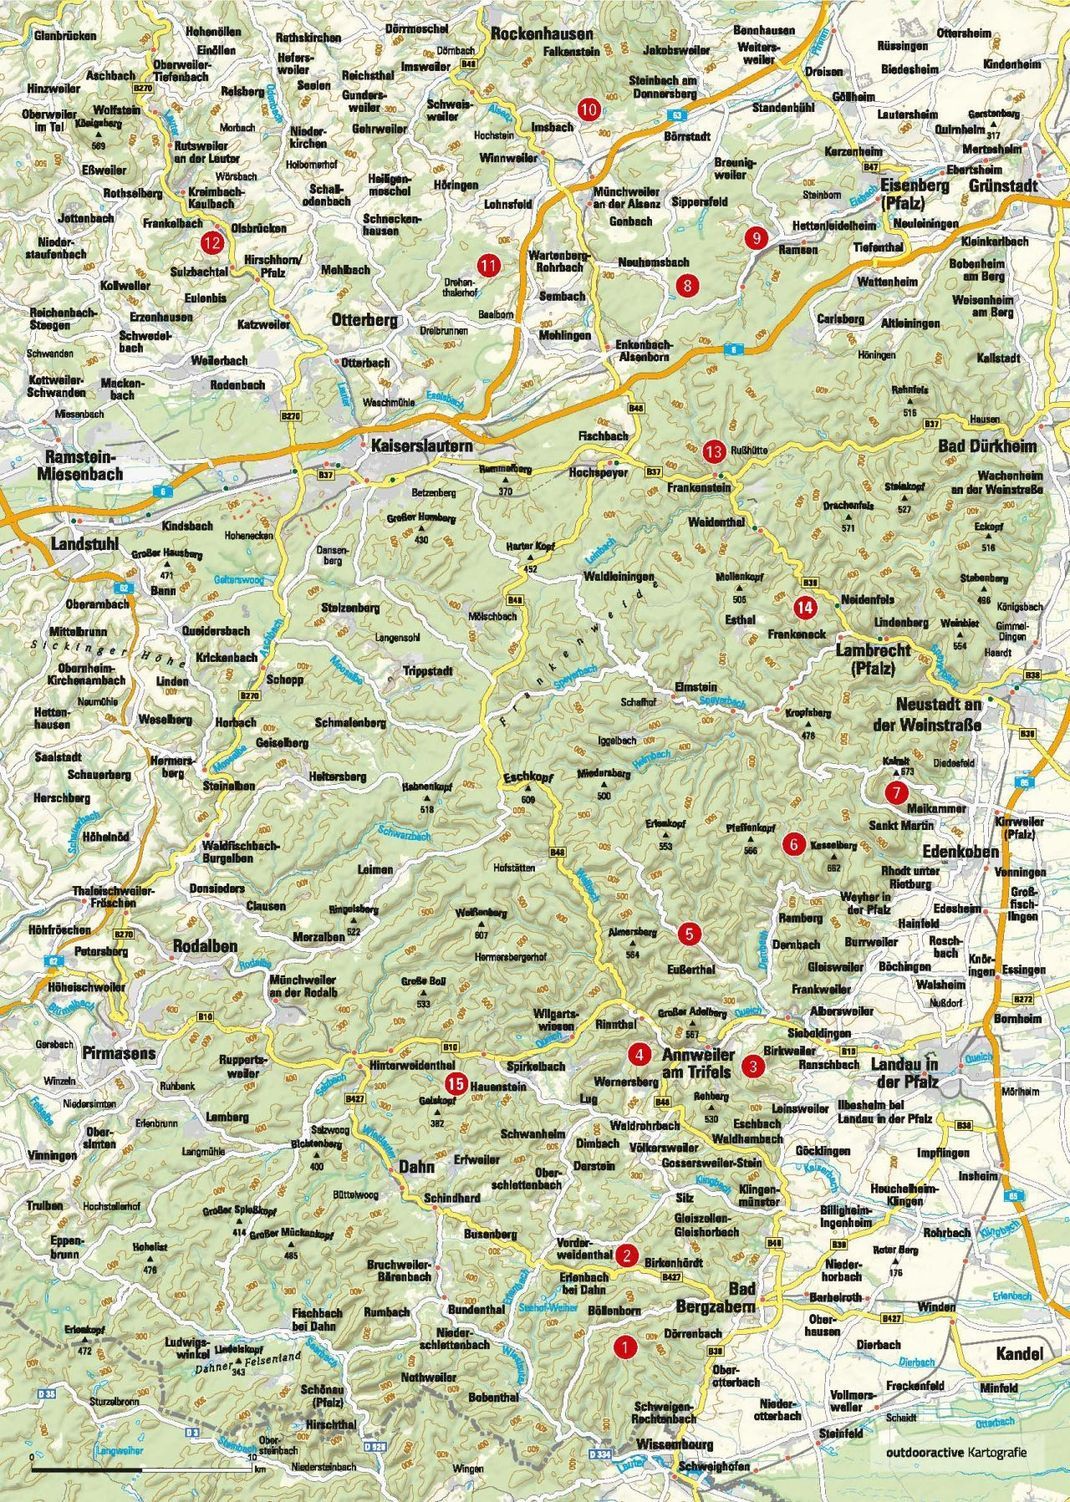 Trekking-Plätze in der Pfalz findest du auf dieser Karte.